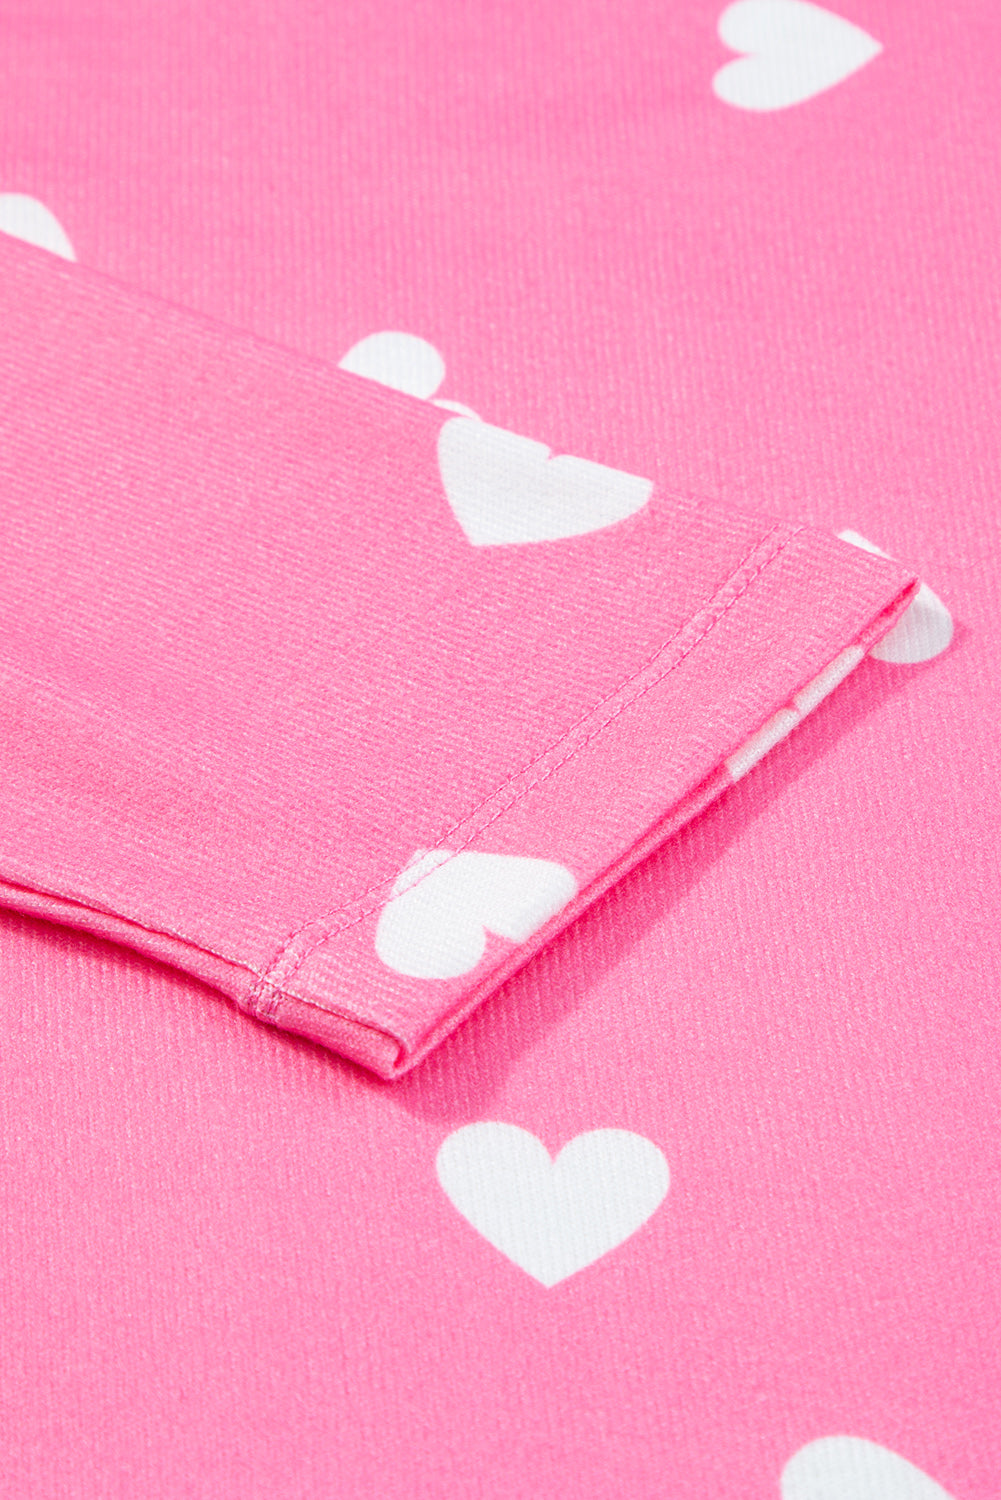 Roza majica s dugim rukavima i kratke hlače s printom srca za Valentinovo